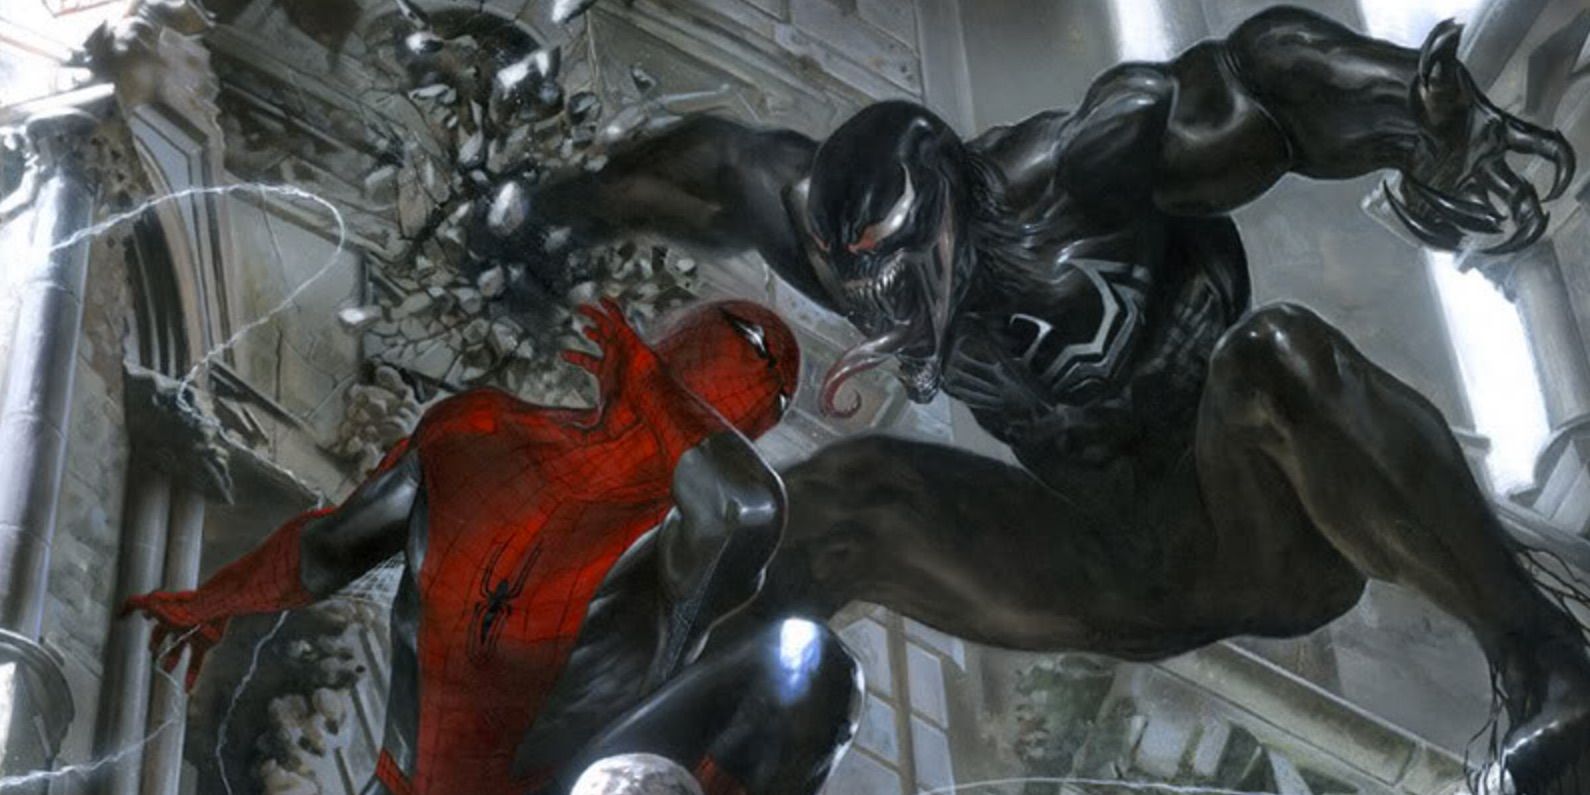 Spider-Man vs Venom in Web of Shadows comic